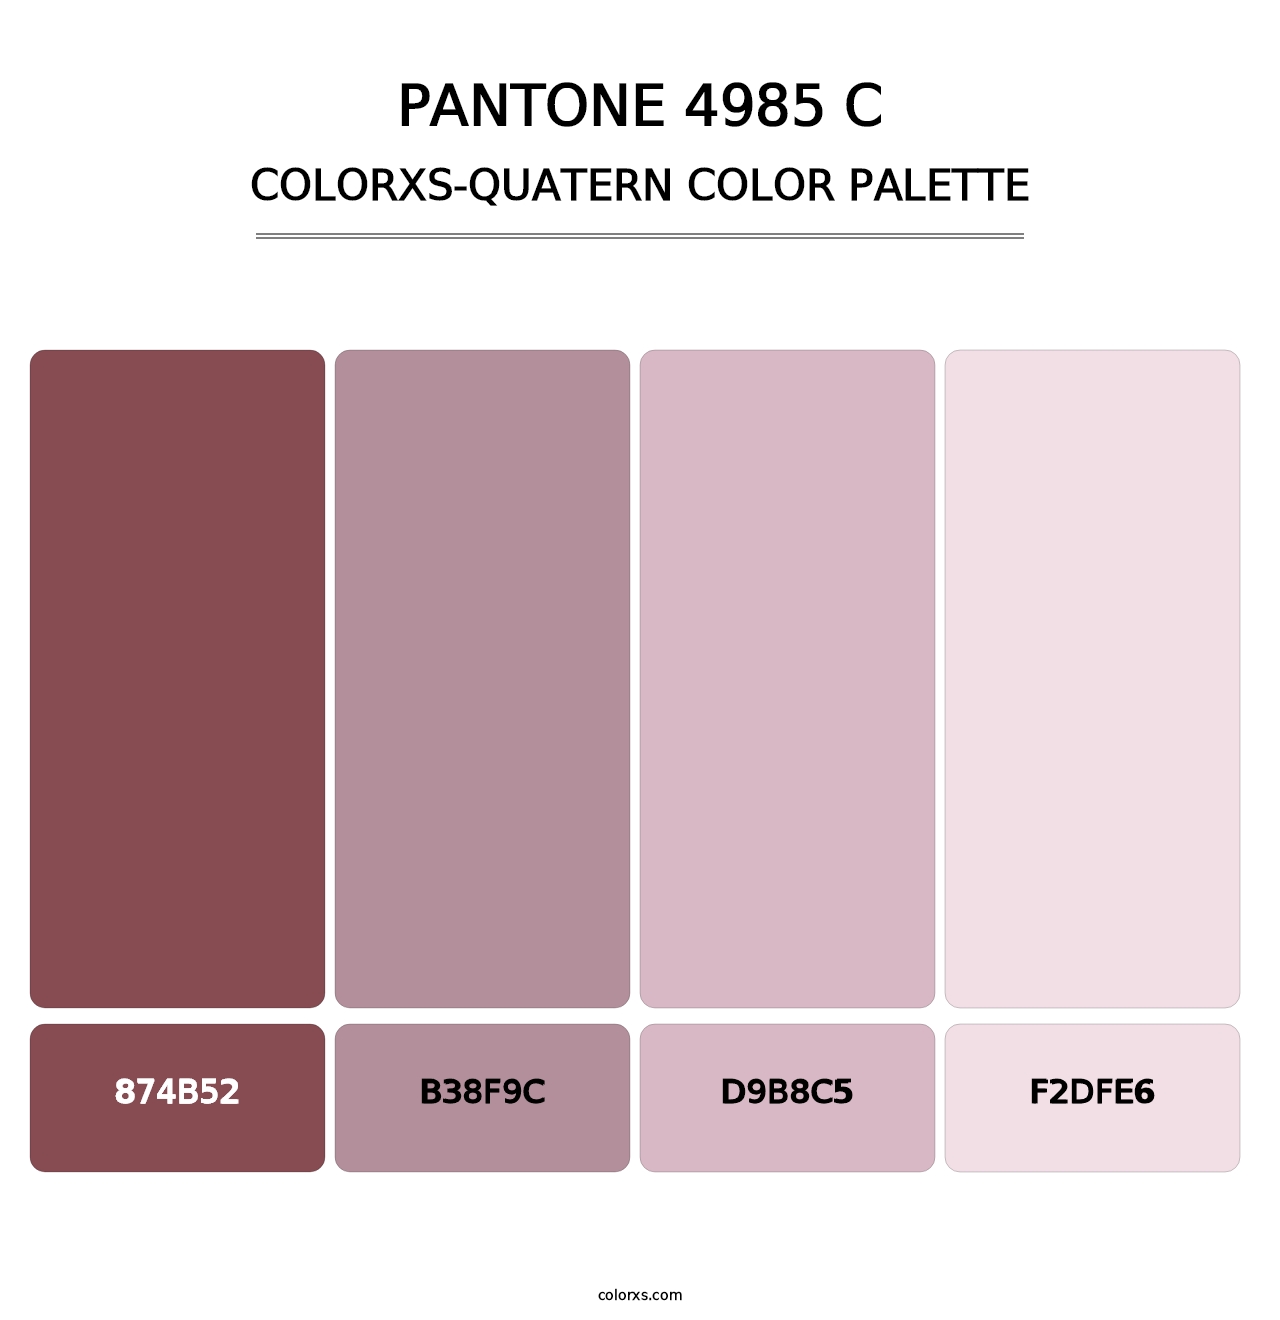 PANTONE 4985 C - Colorxs Quatern Palette